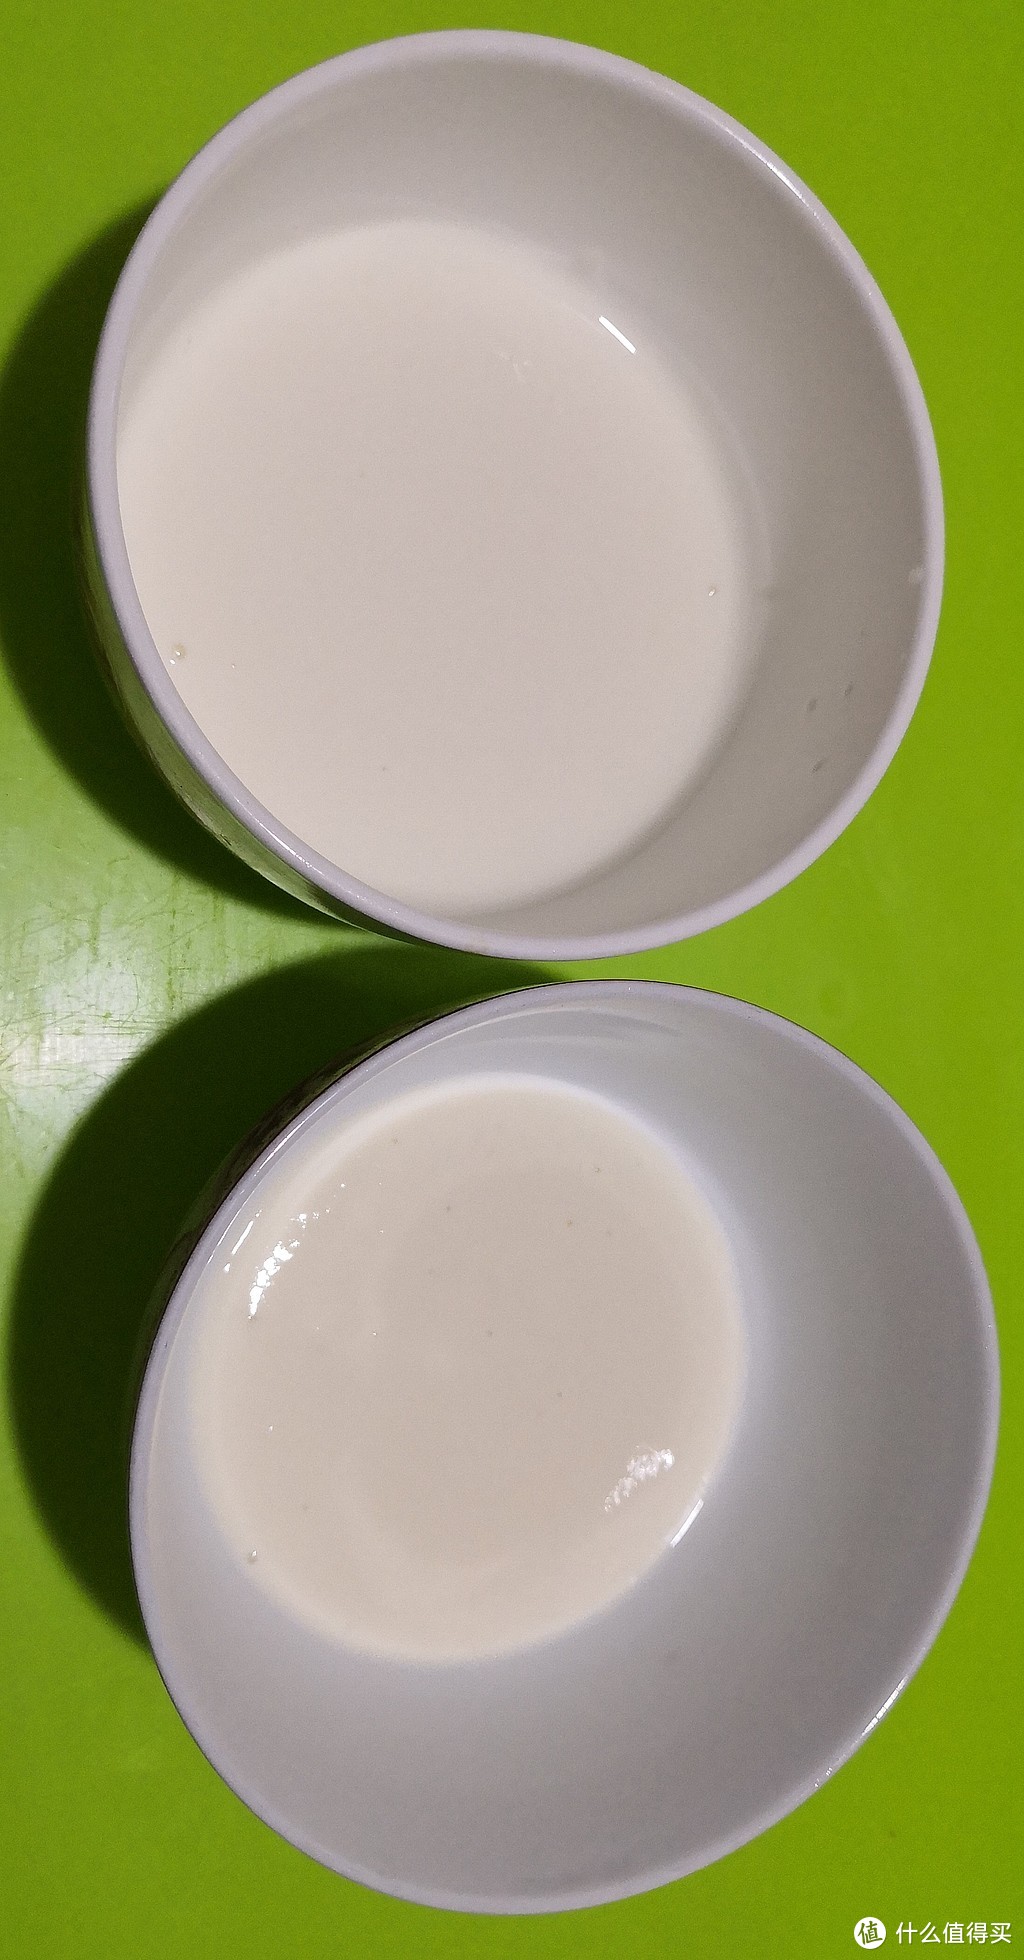 4.0g超高蛋白质满意不，伊利新品柏菲兰牛奶众测报告